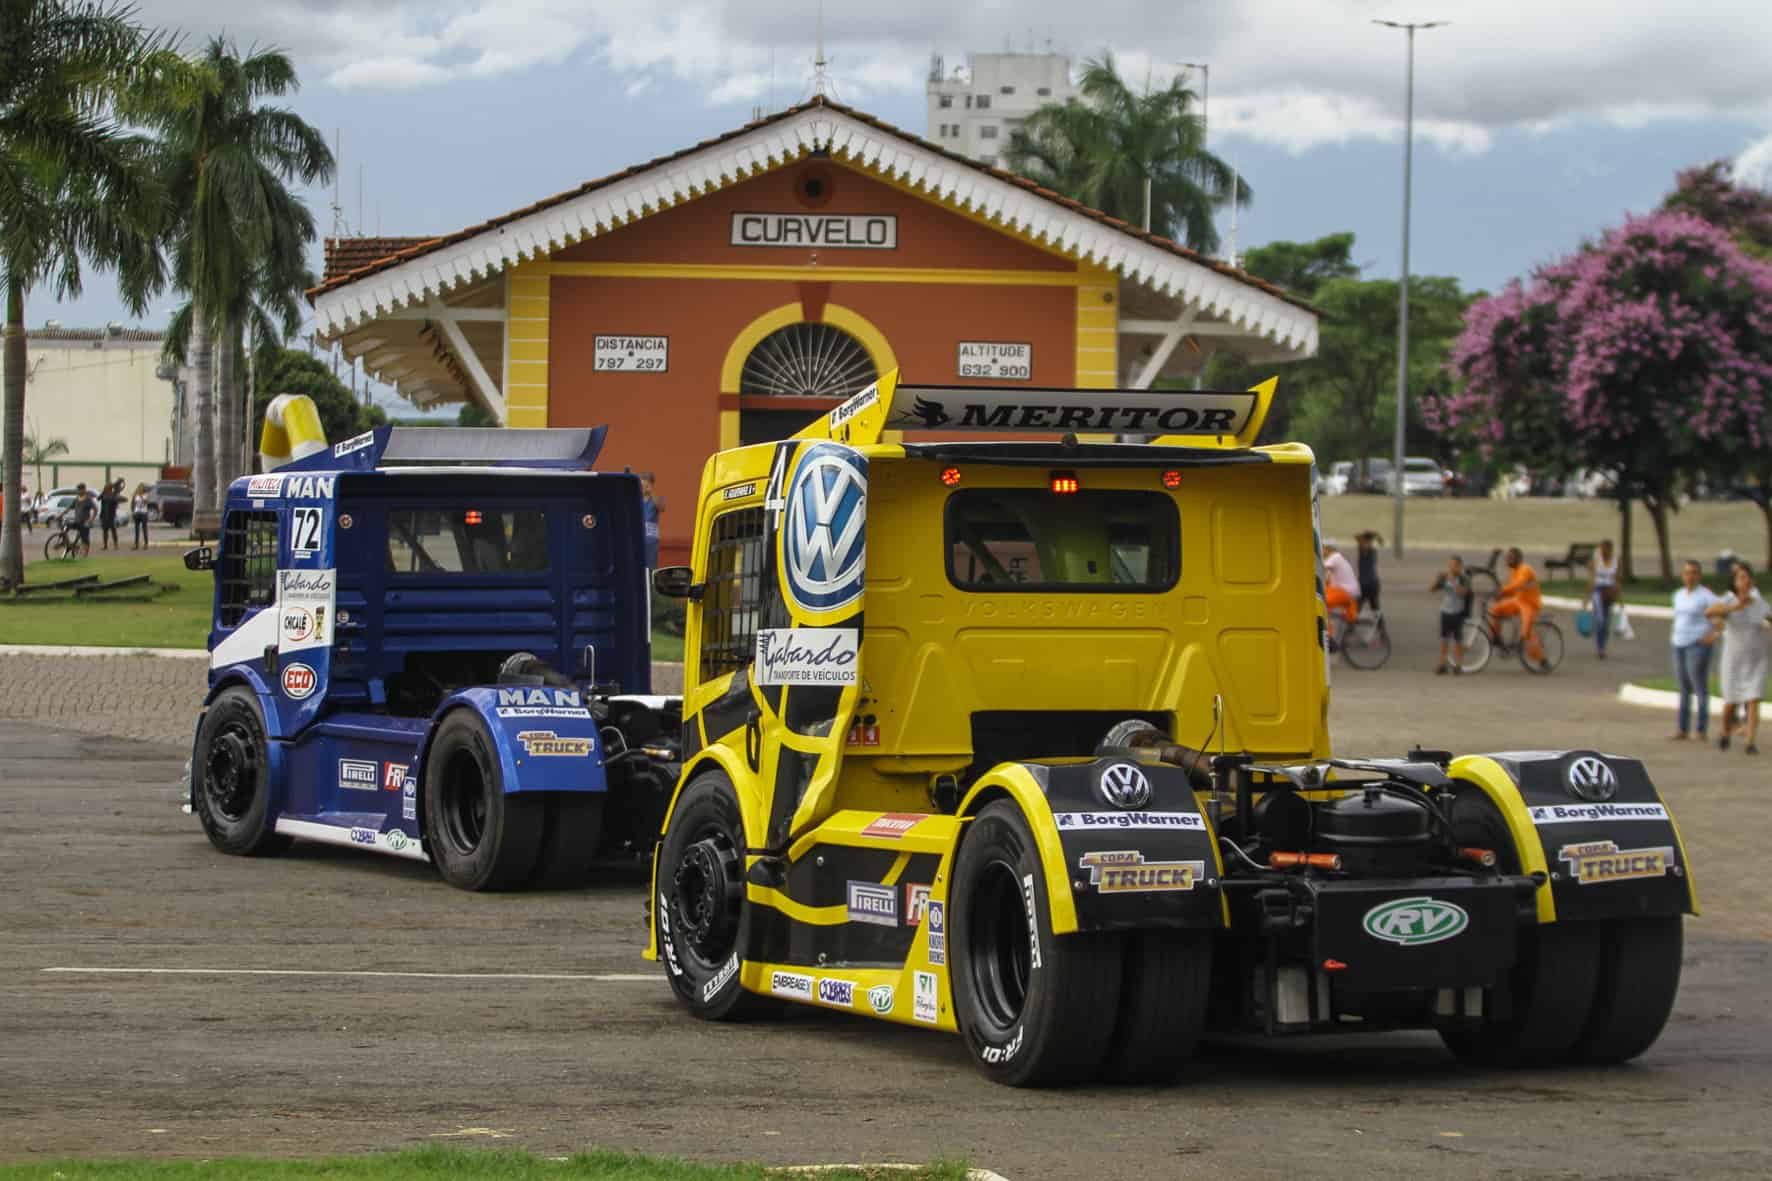 Carreata abre programação da Copa Truck em Minas Gerais